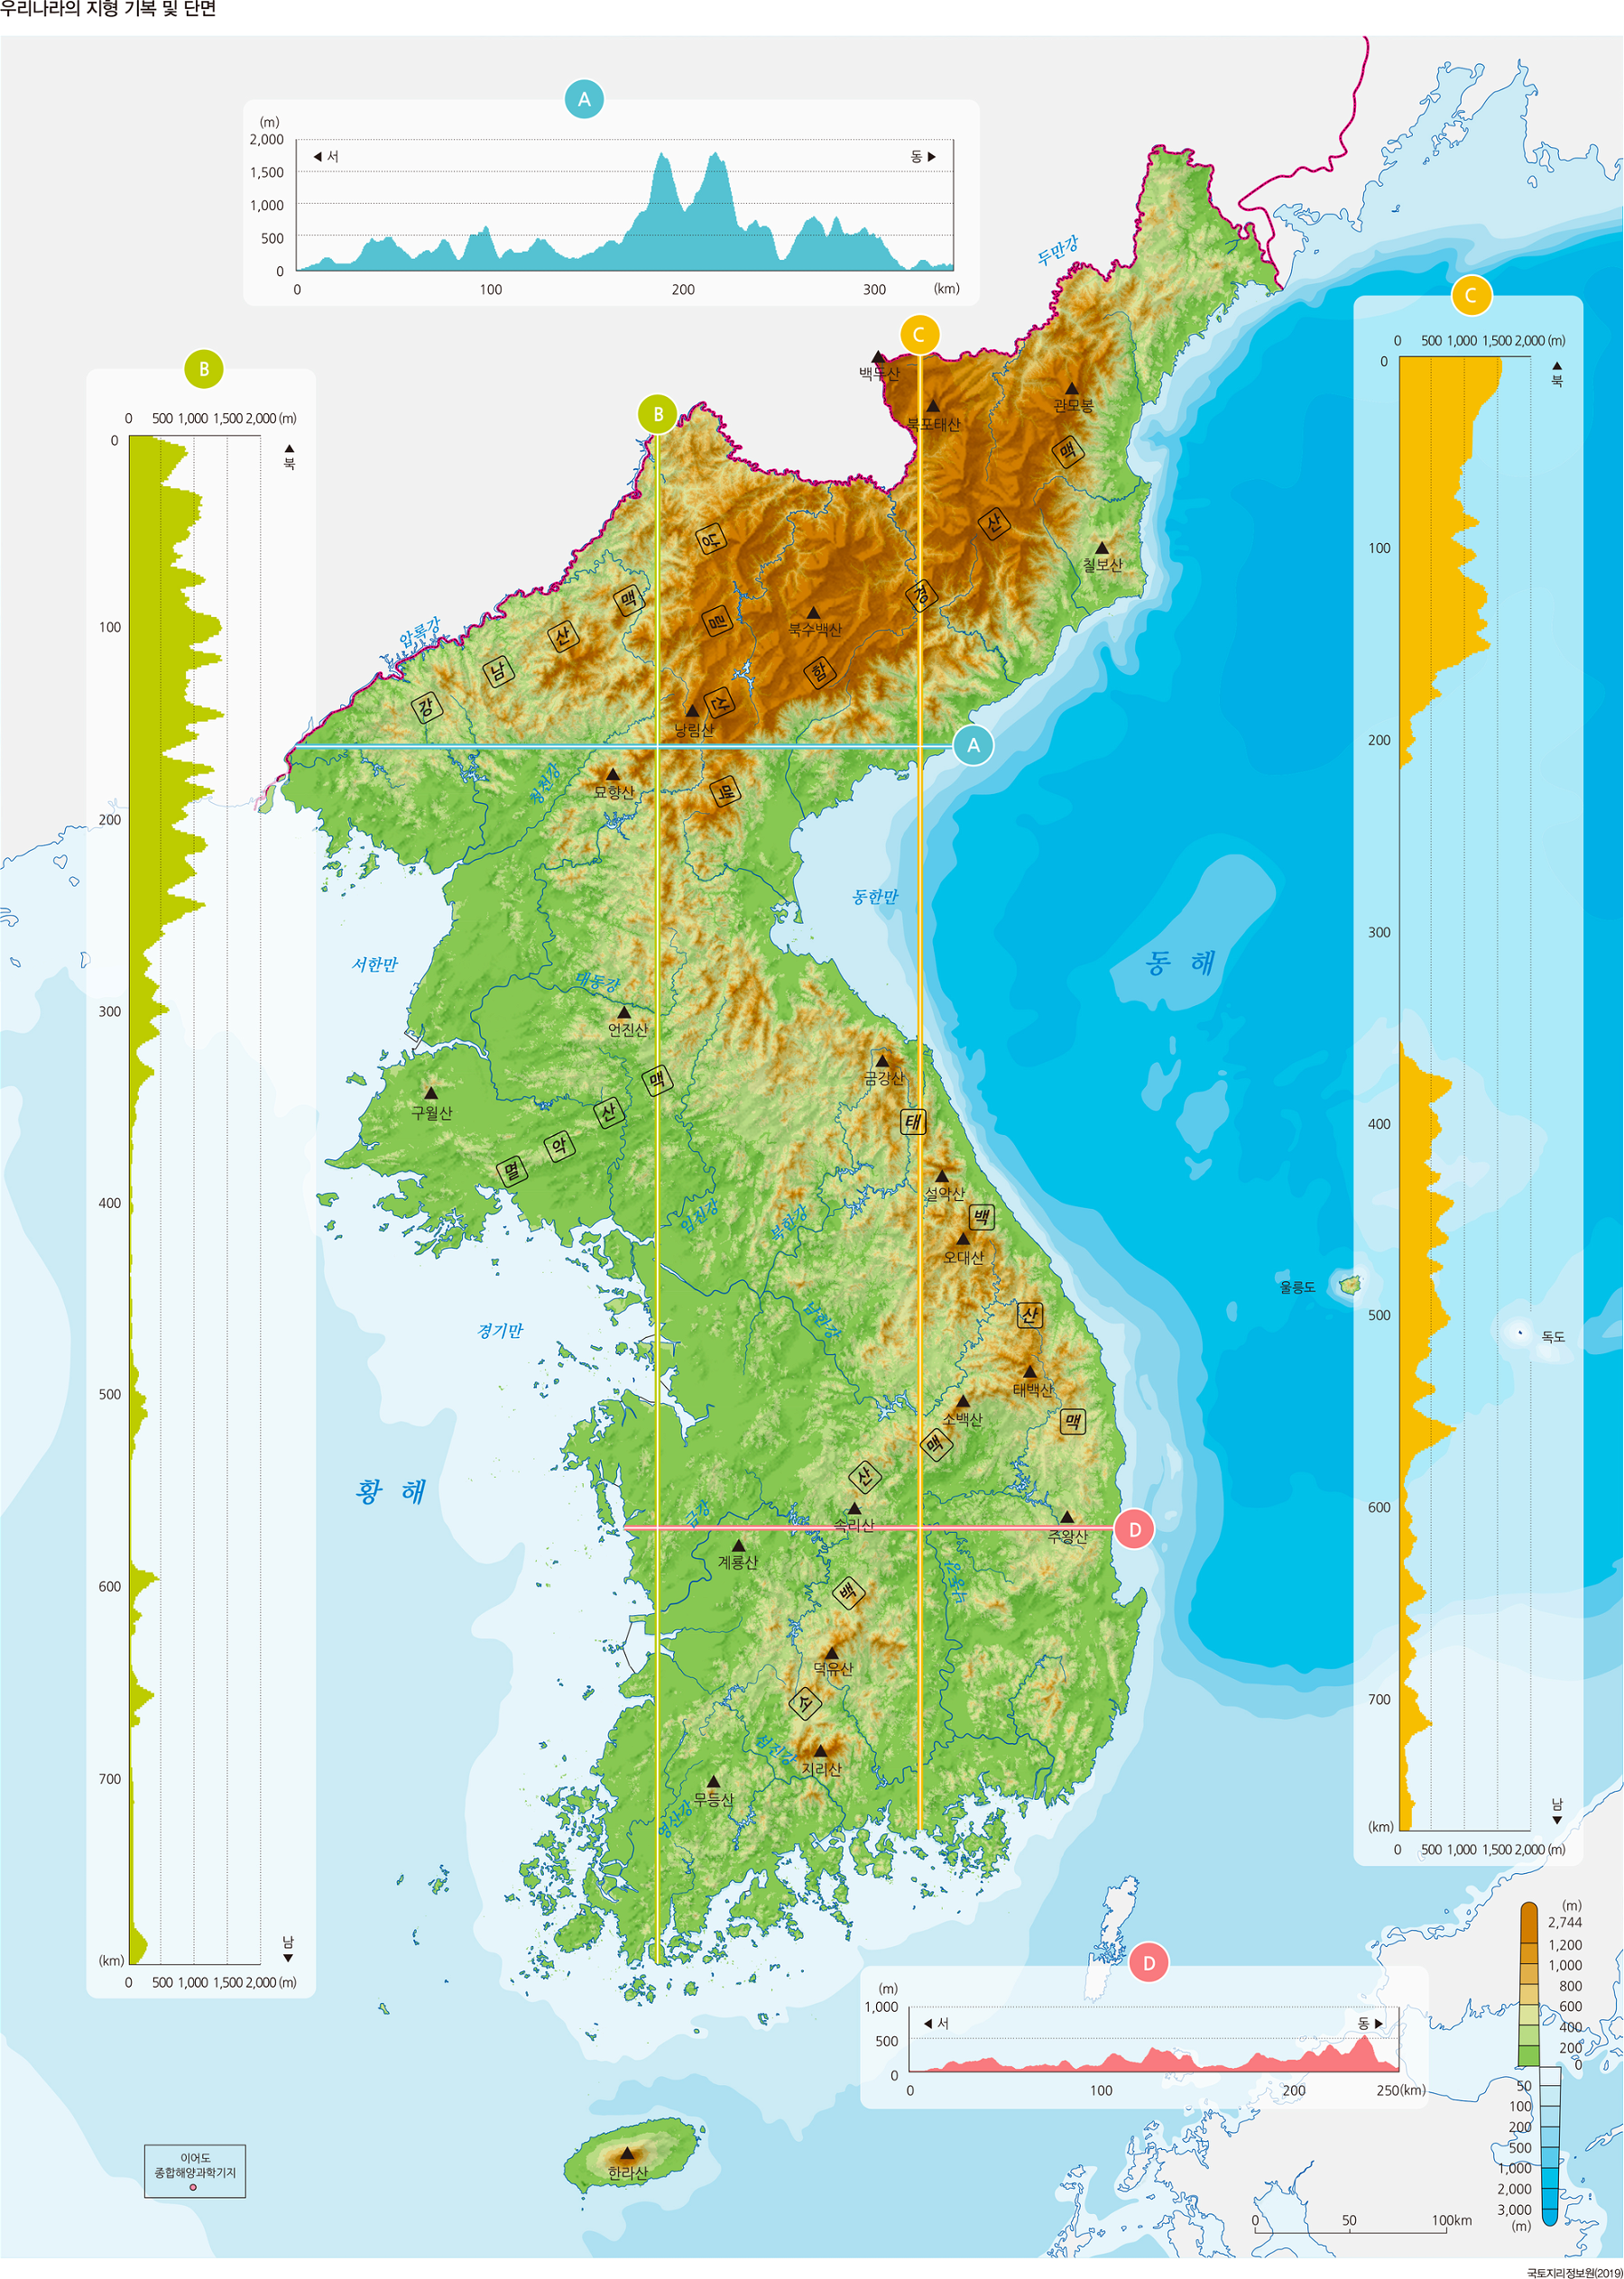 한반도의 지형 기복 및 단면도
출처. 대한민국 국가지도집